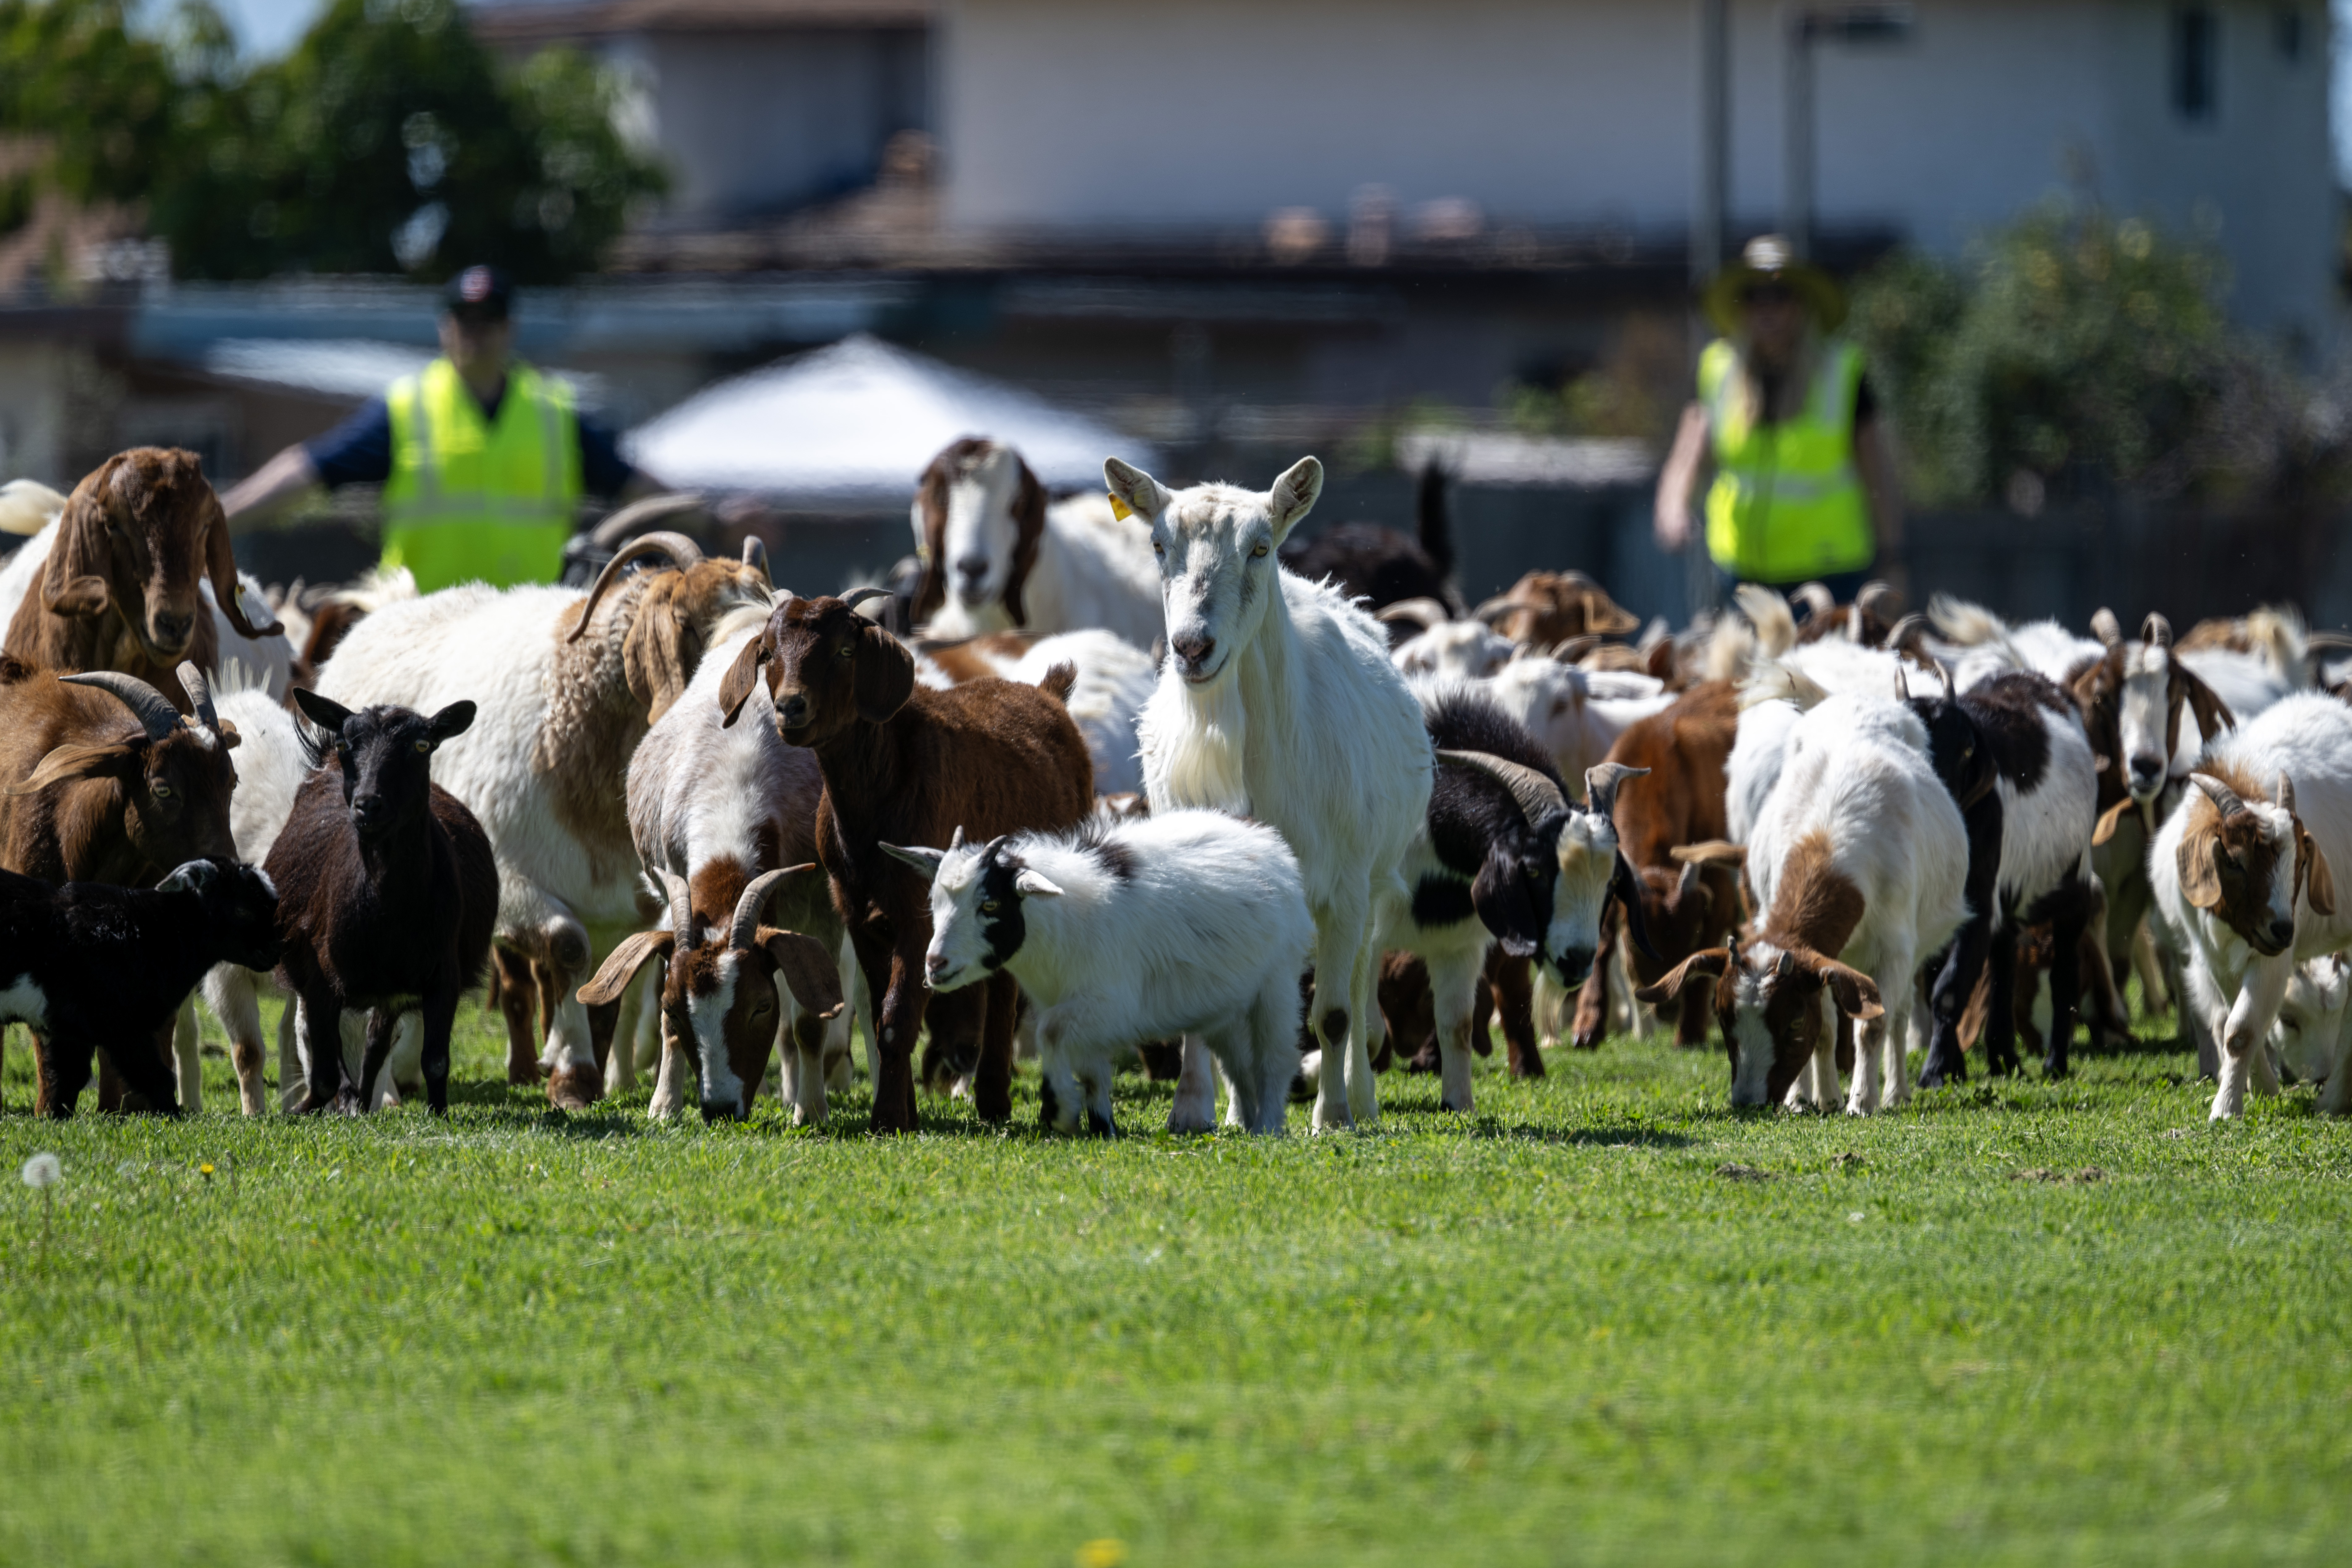 Goat grazing event in Chula Vista